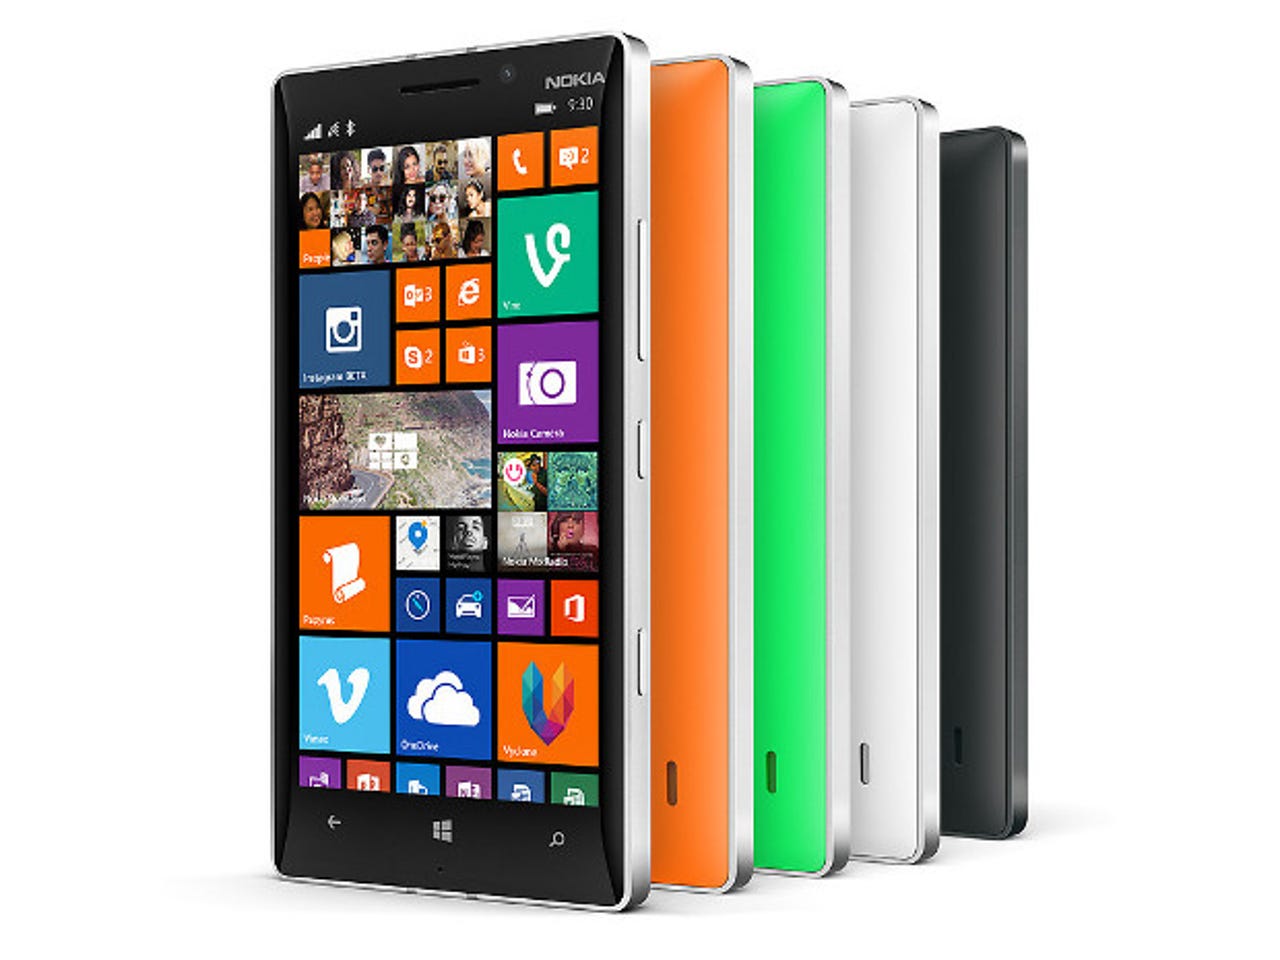 The Nokia Lumia 930